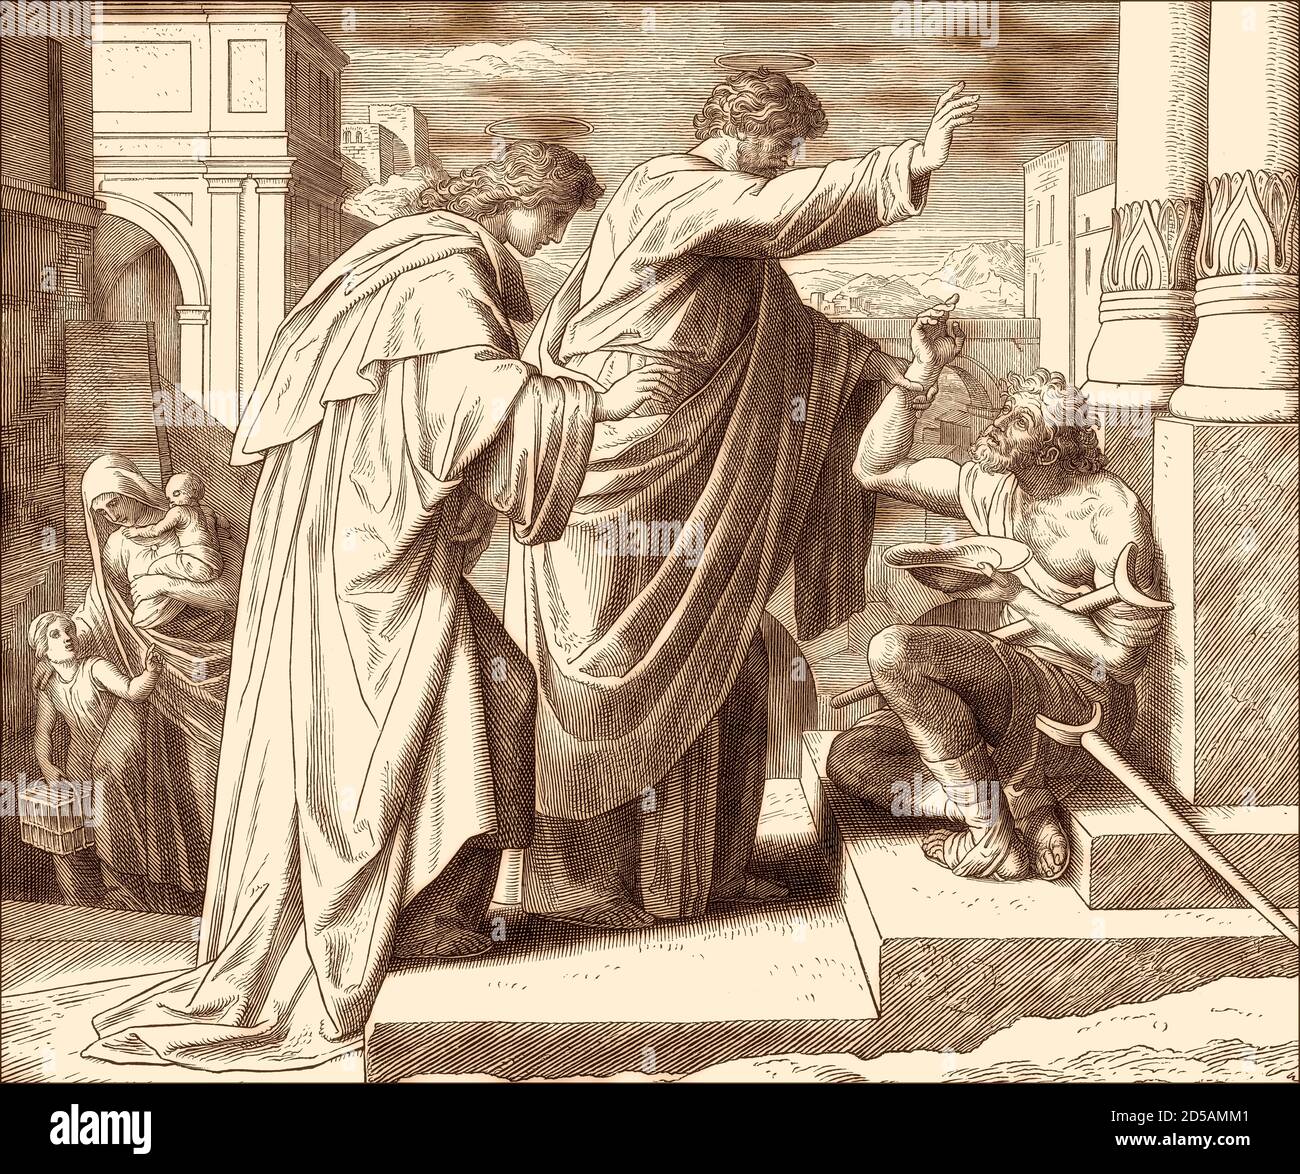 St. Peter Healing the Crippled Beggar, New Testament, by Julius Schnorr von Carolsfeld, 1860 Stock Photo